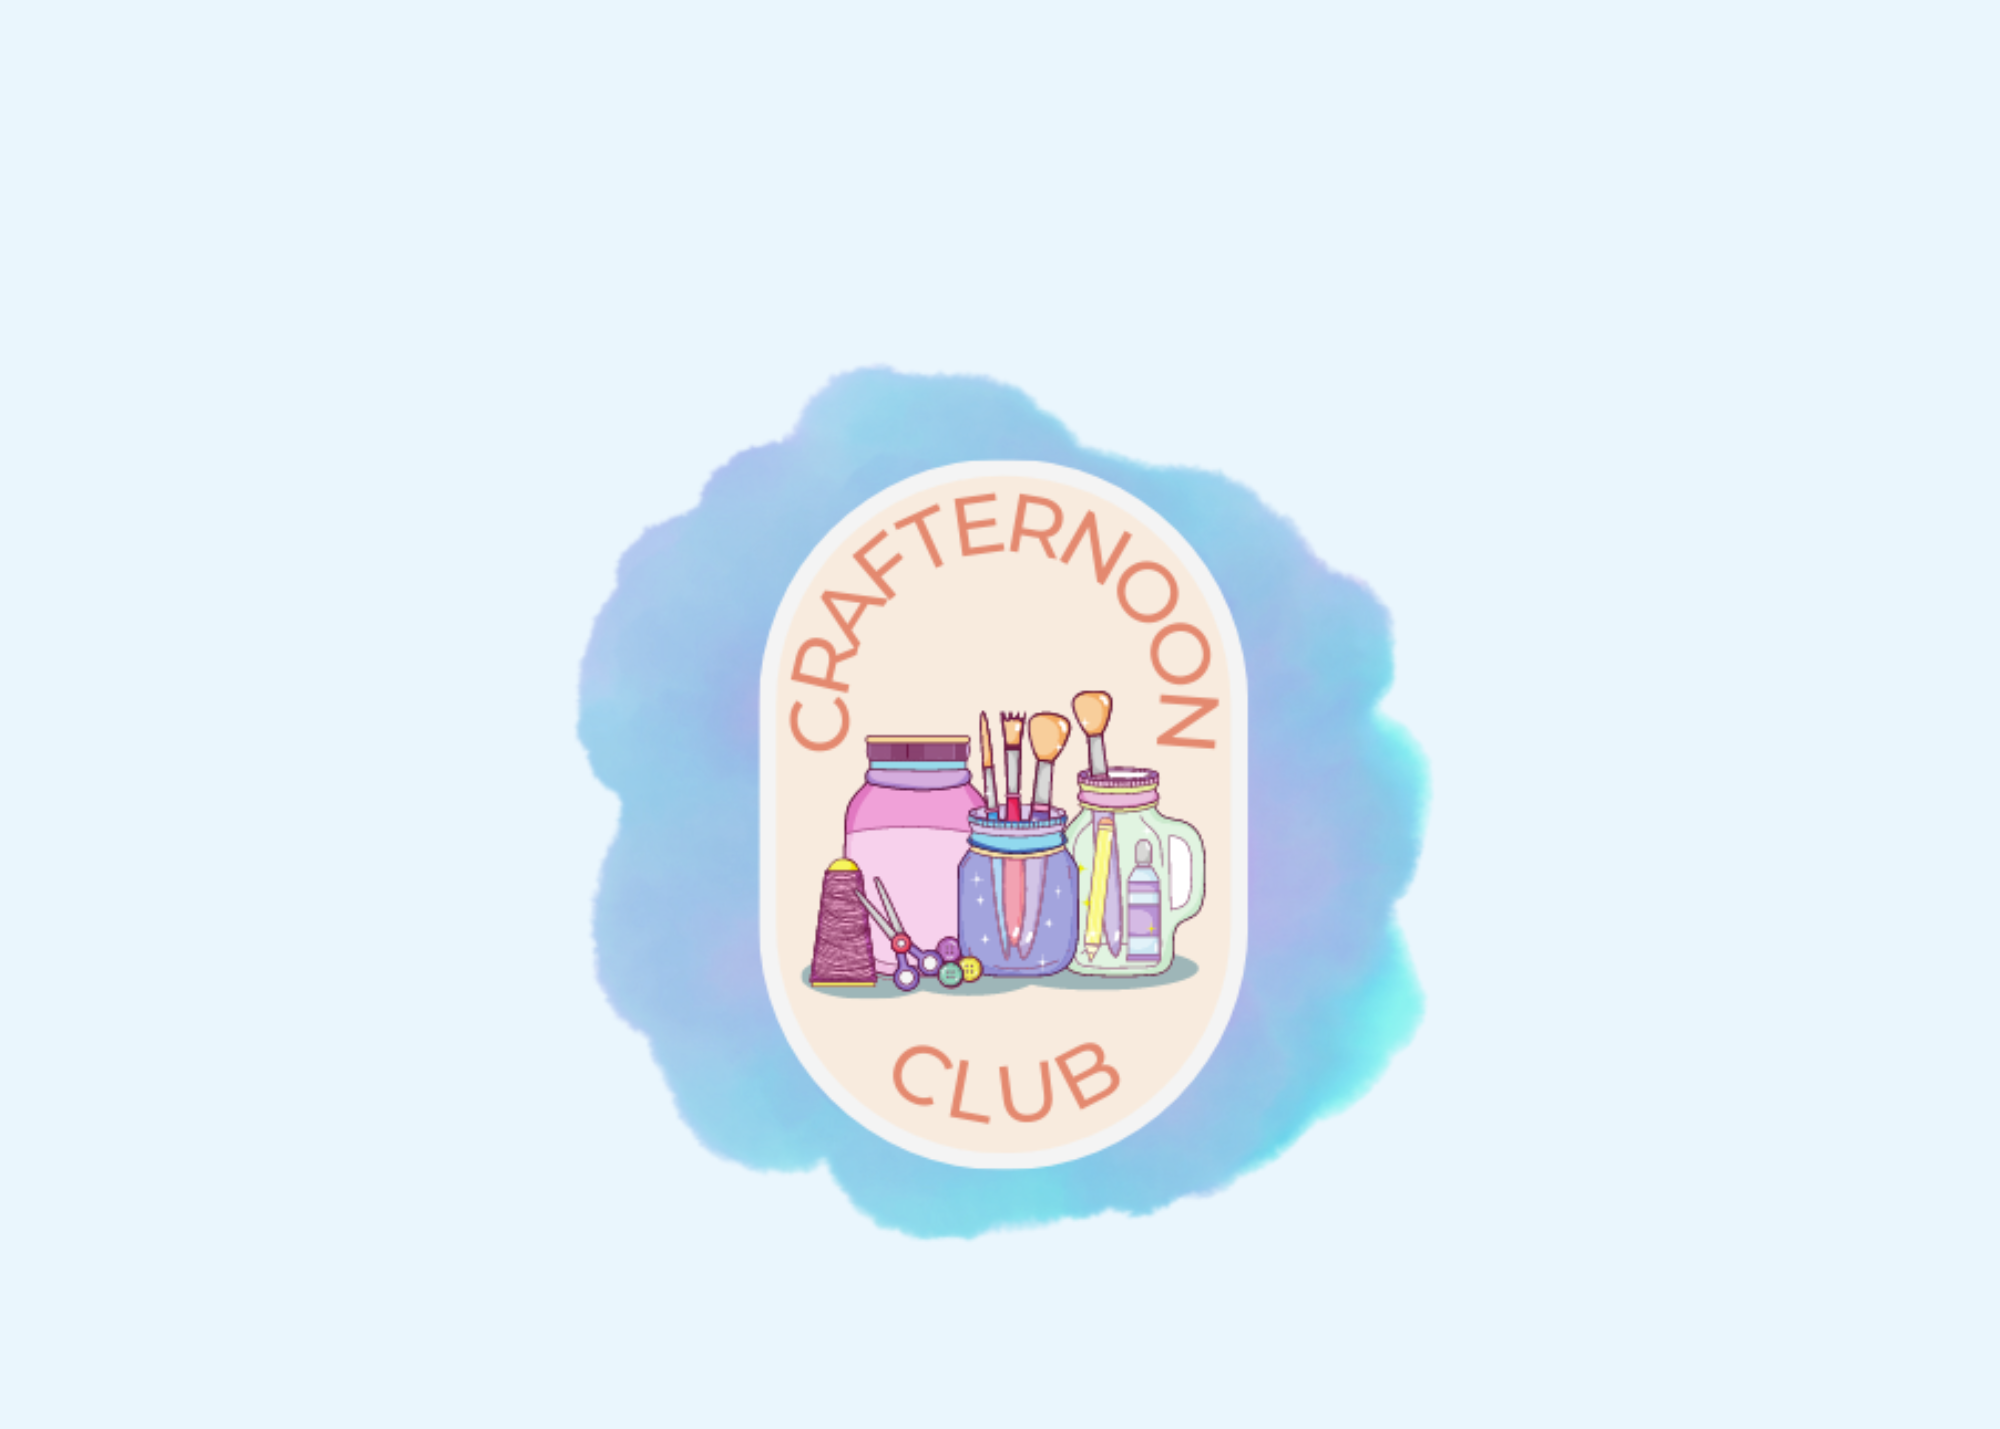 Crafternoon Club logo